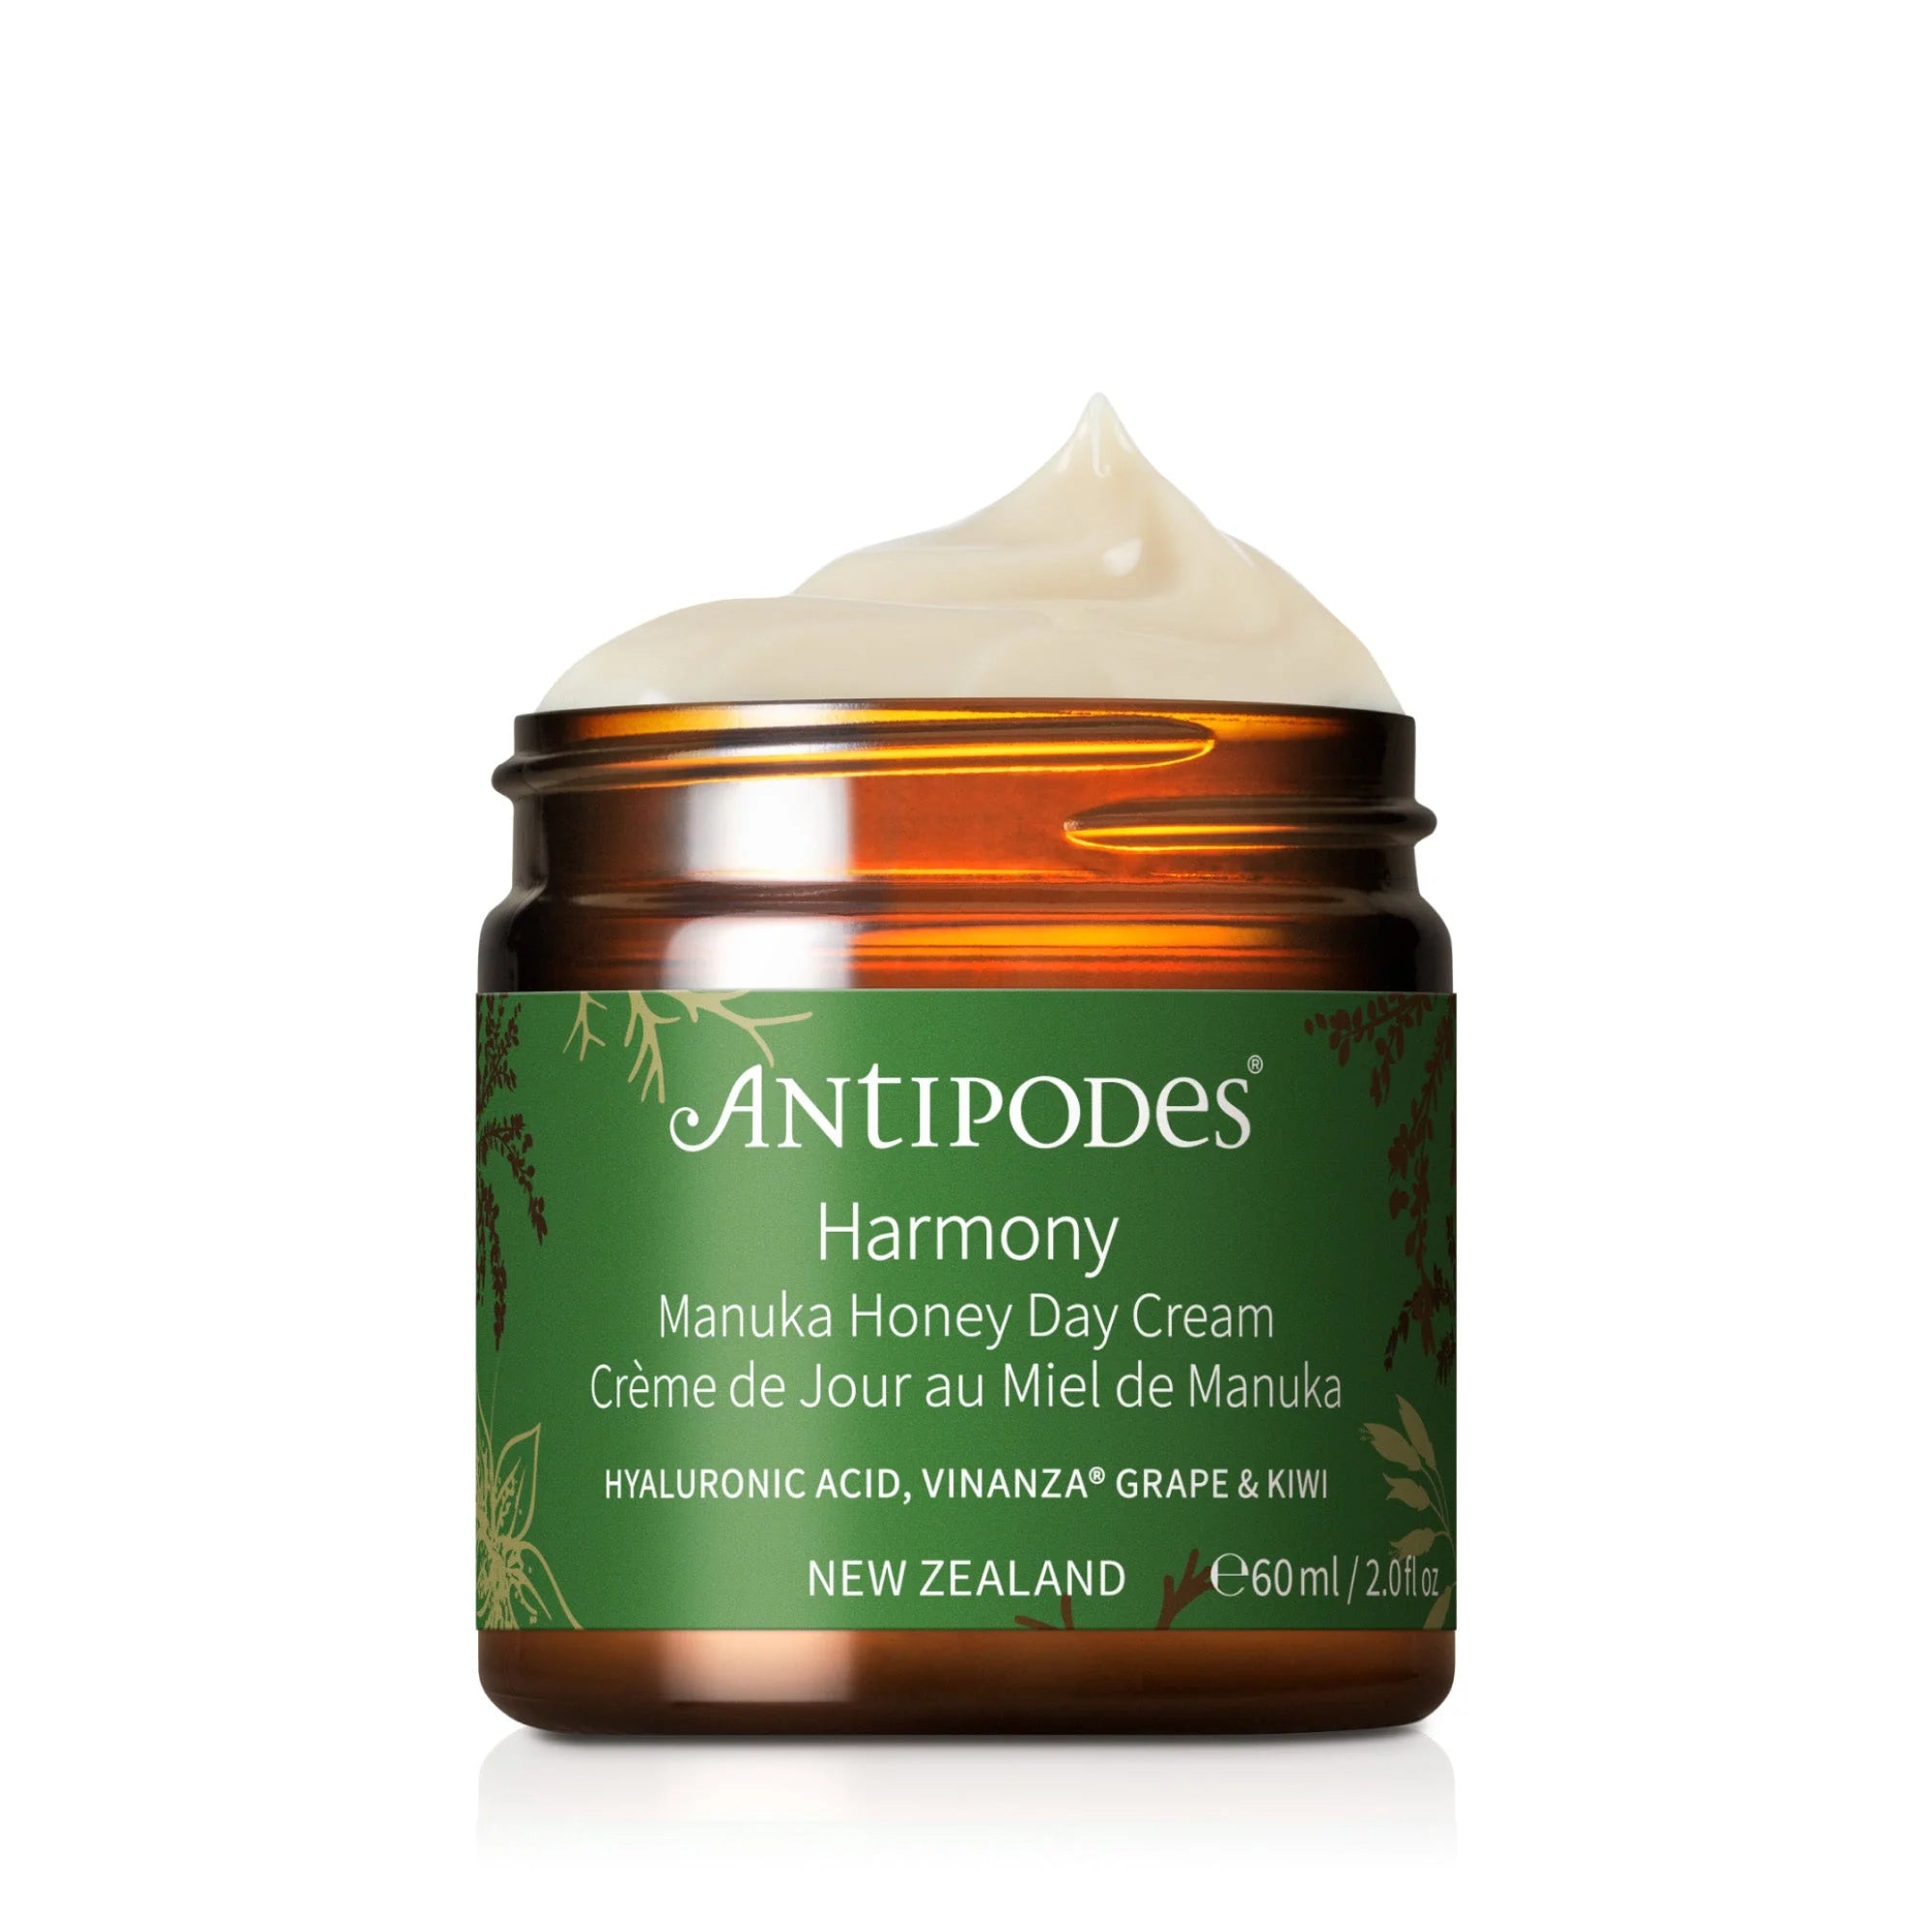 Antipodes Harmony Manuka Honey Day Cream 60ml-The Living Co.